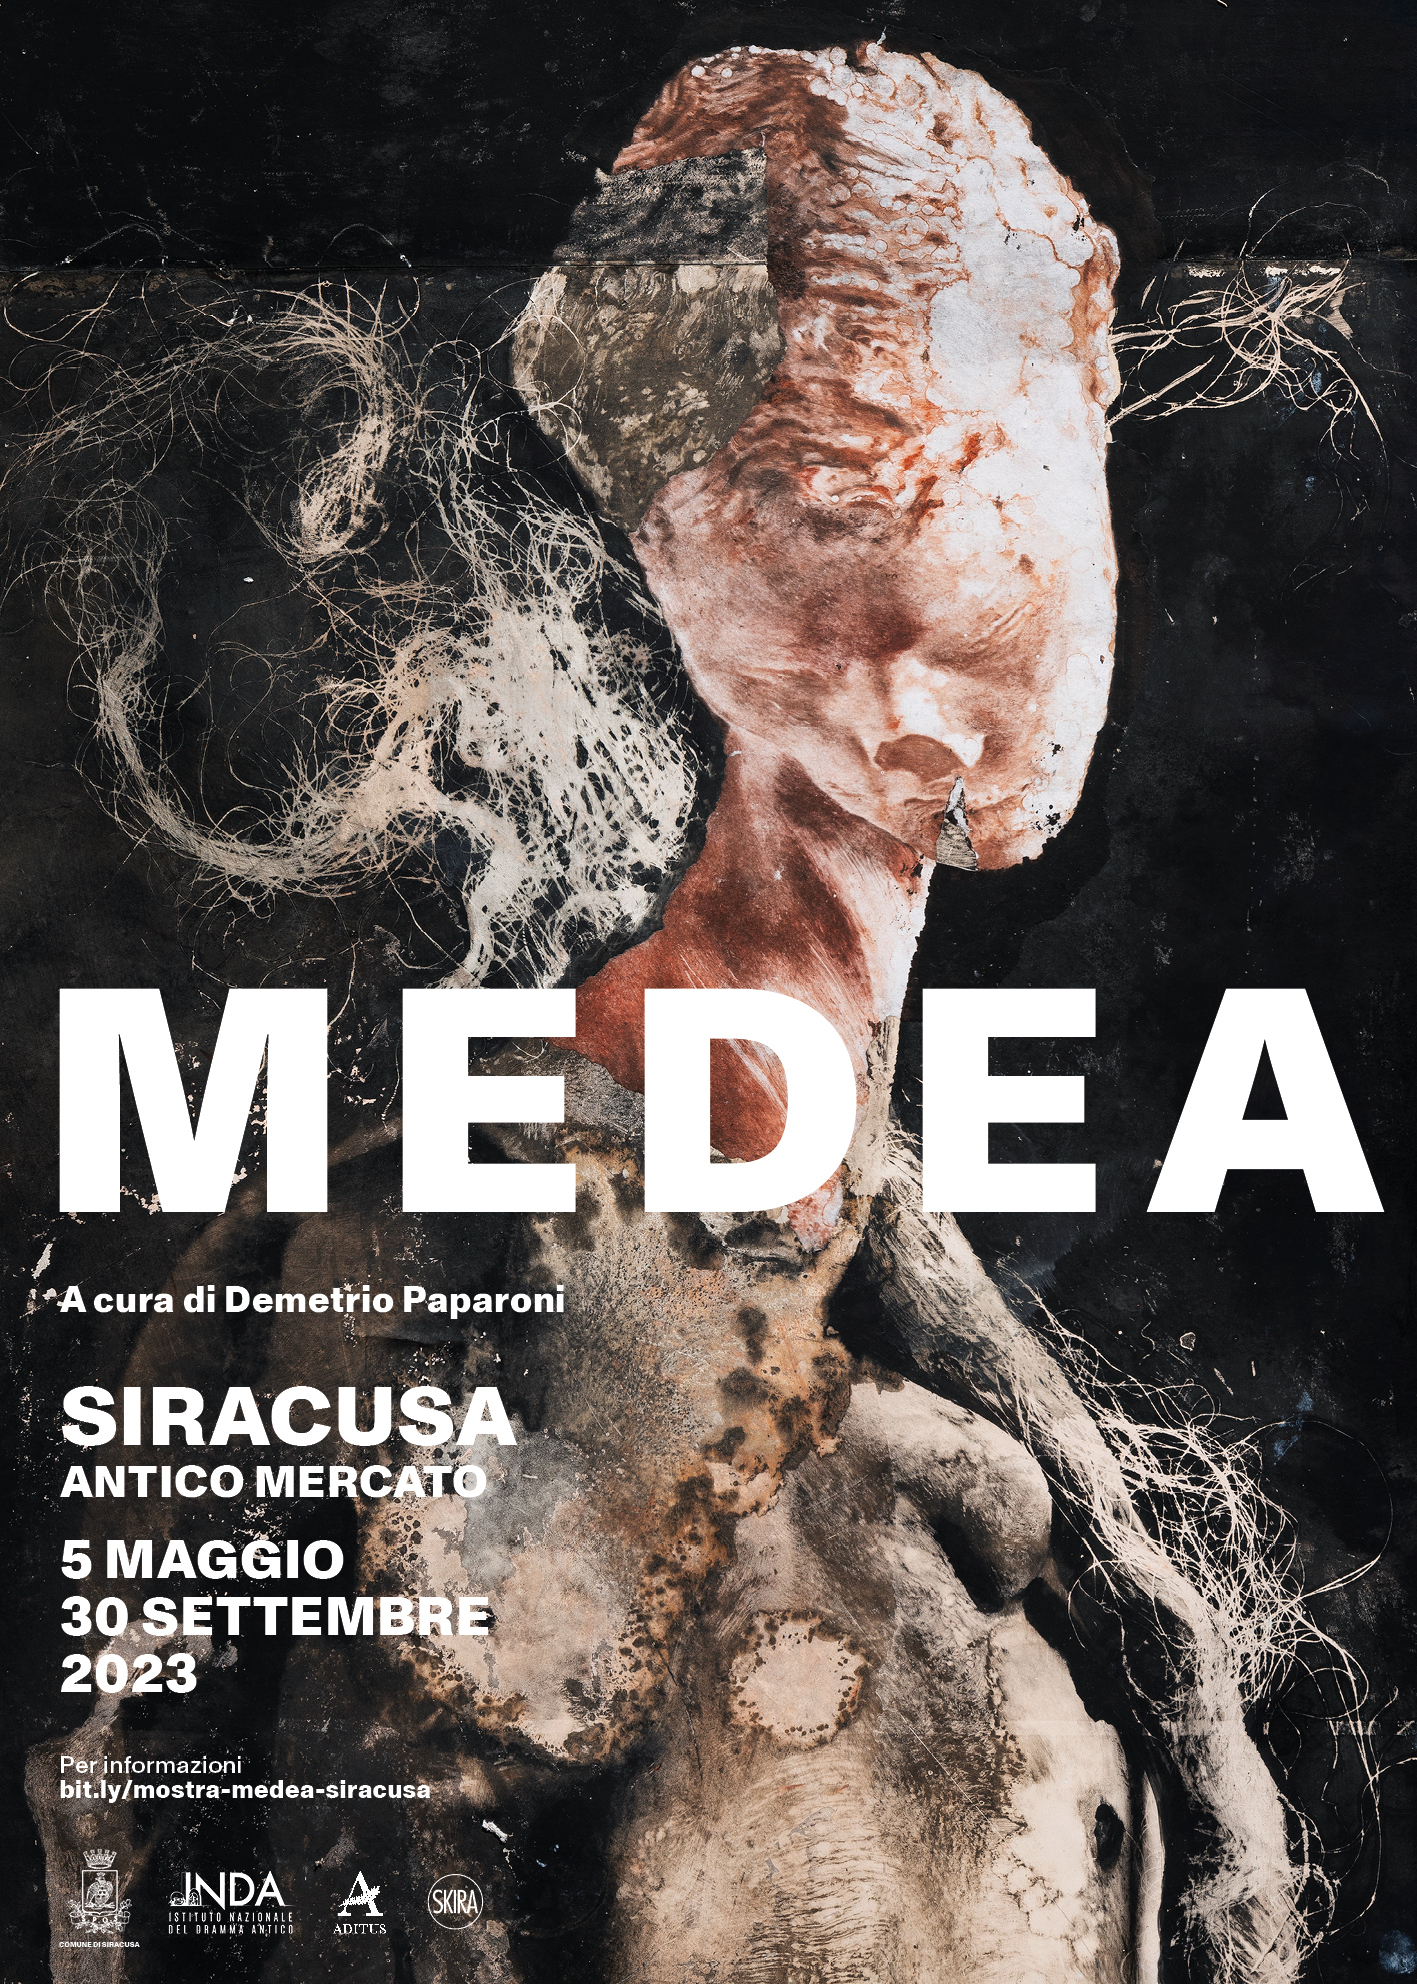 Arte contemporanea, a Siracusa dal 5 maggio la mostra “Medea”